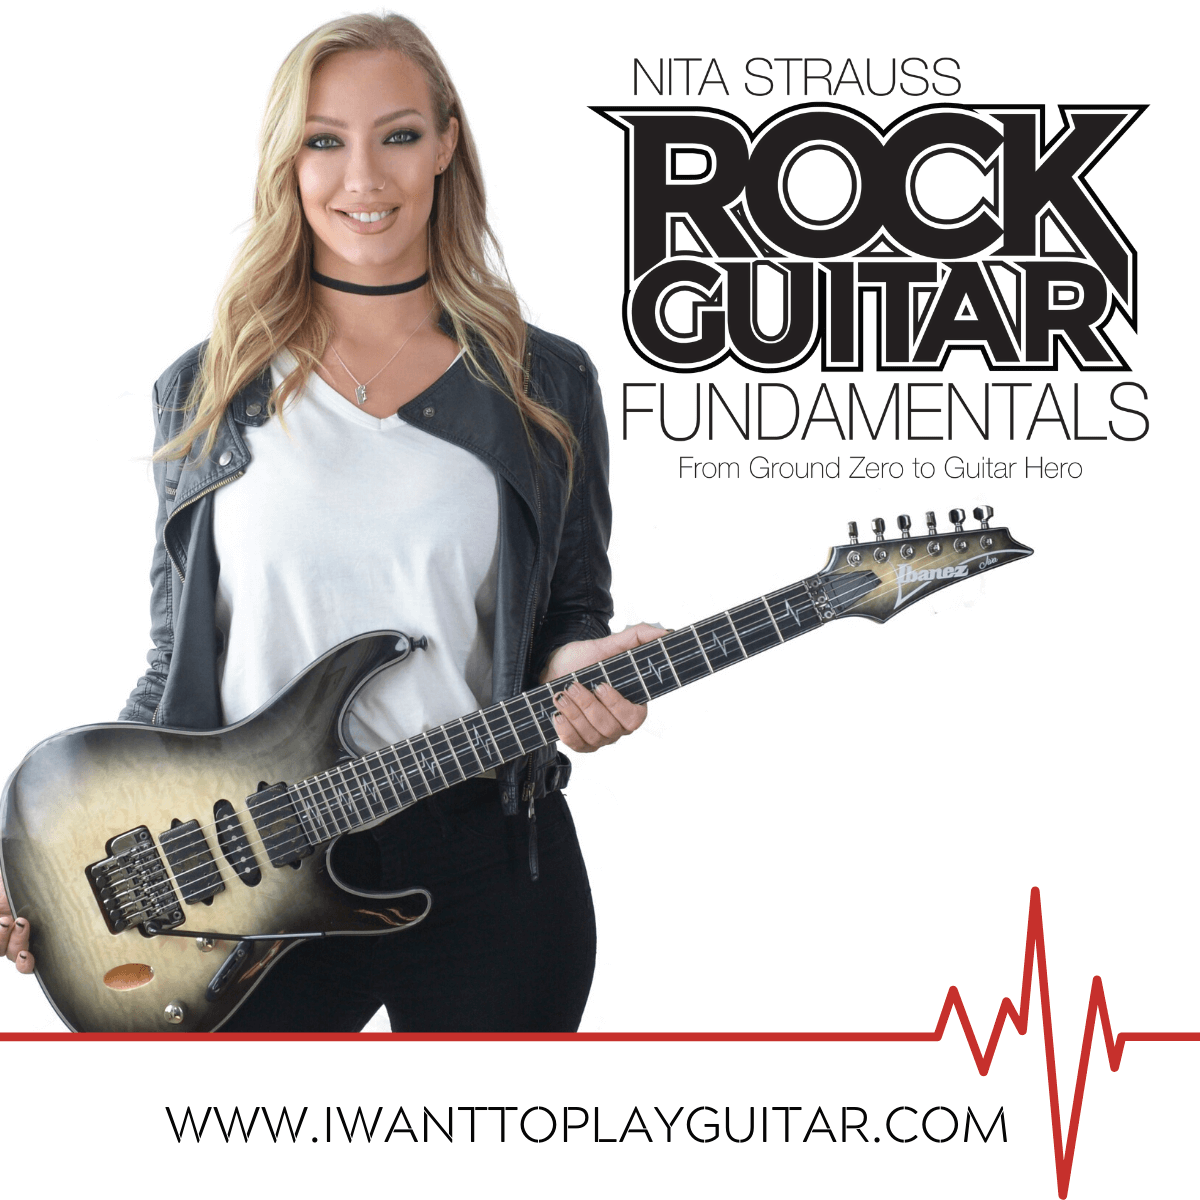 Nita Strauss Launches Rock Guitar Fundamentals Highwire Daze